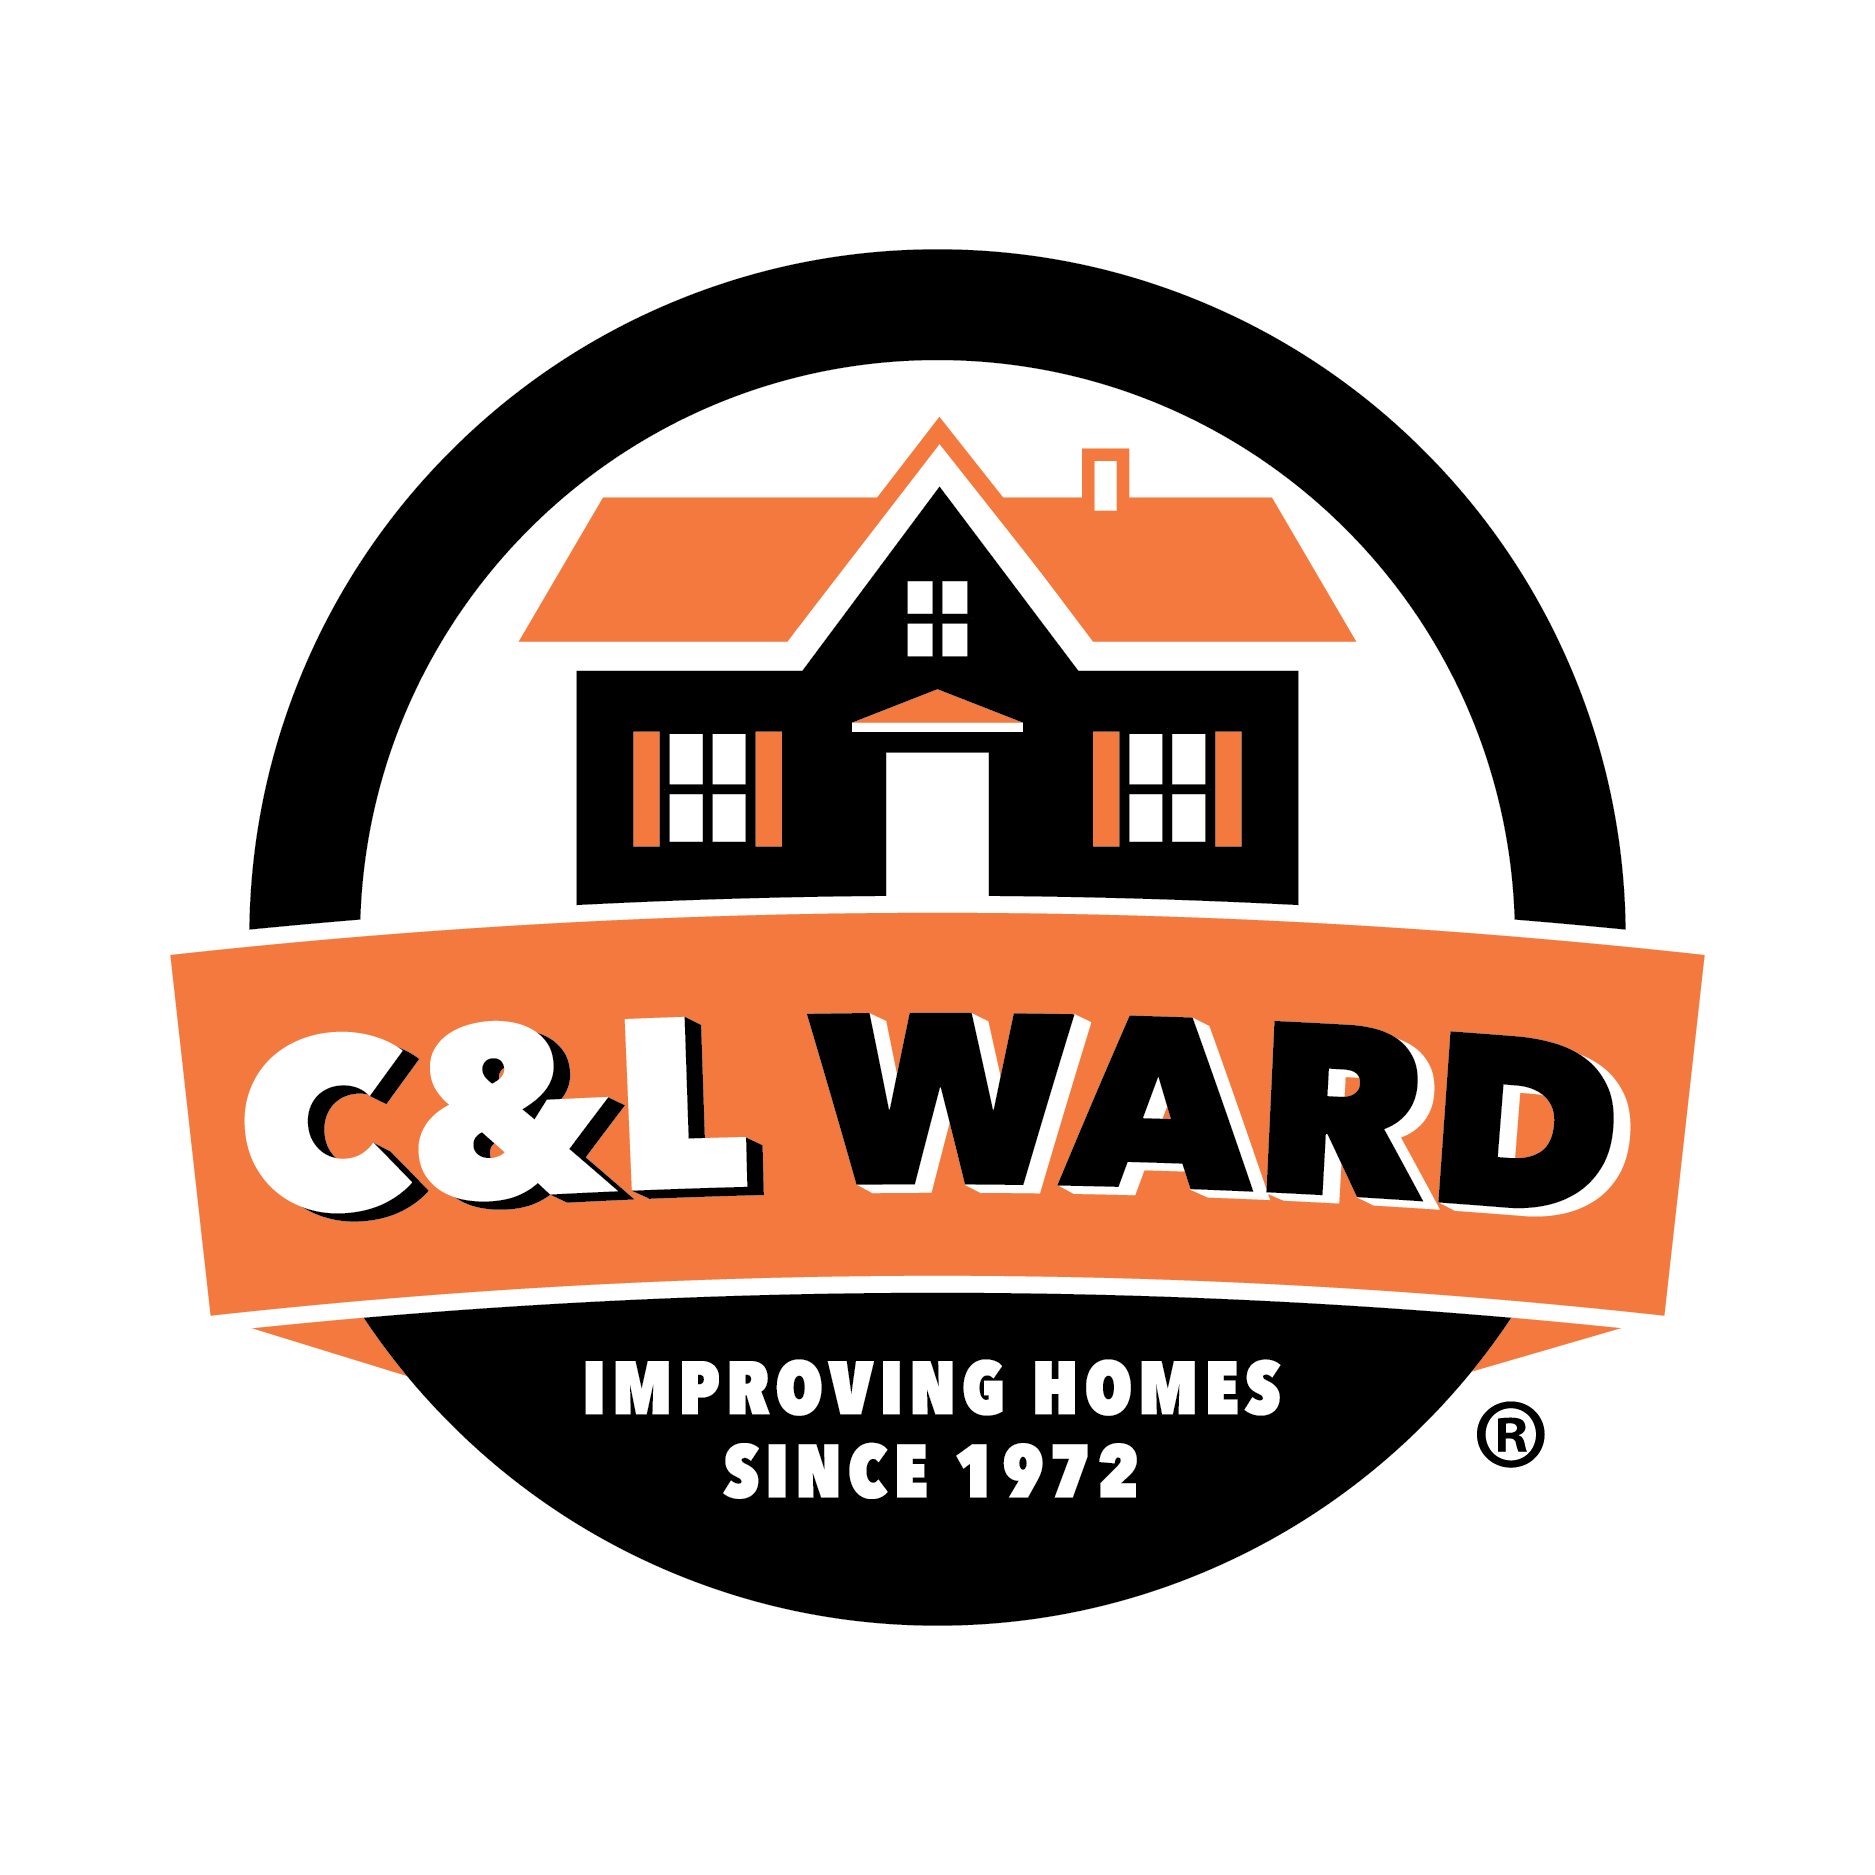 2 C Logo - Brand Resources. C&L Ward